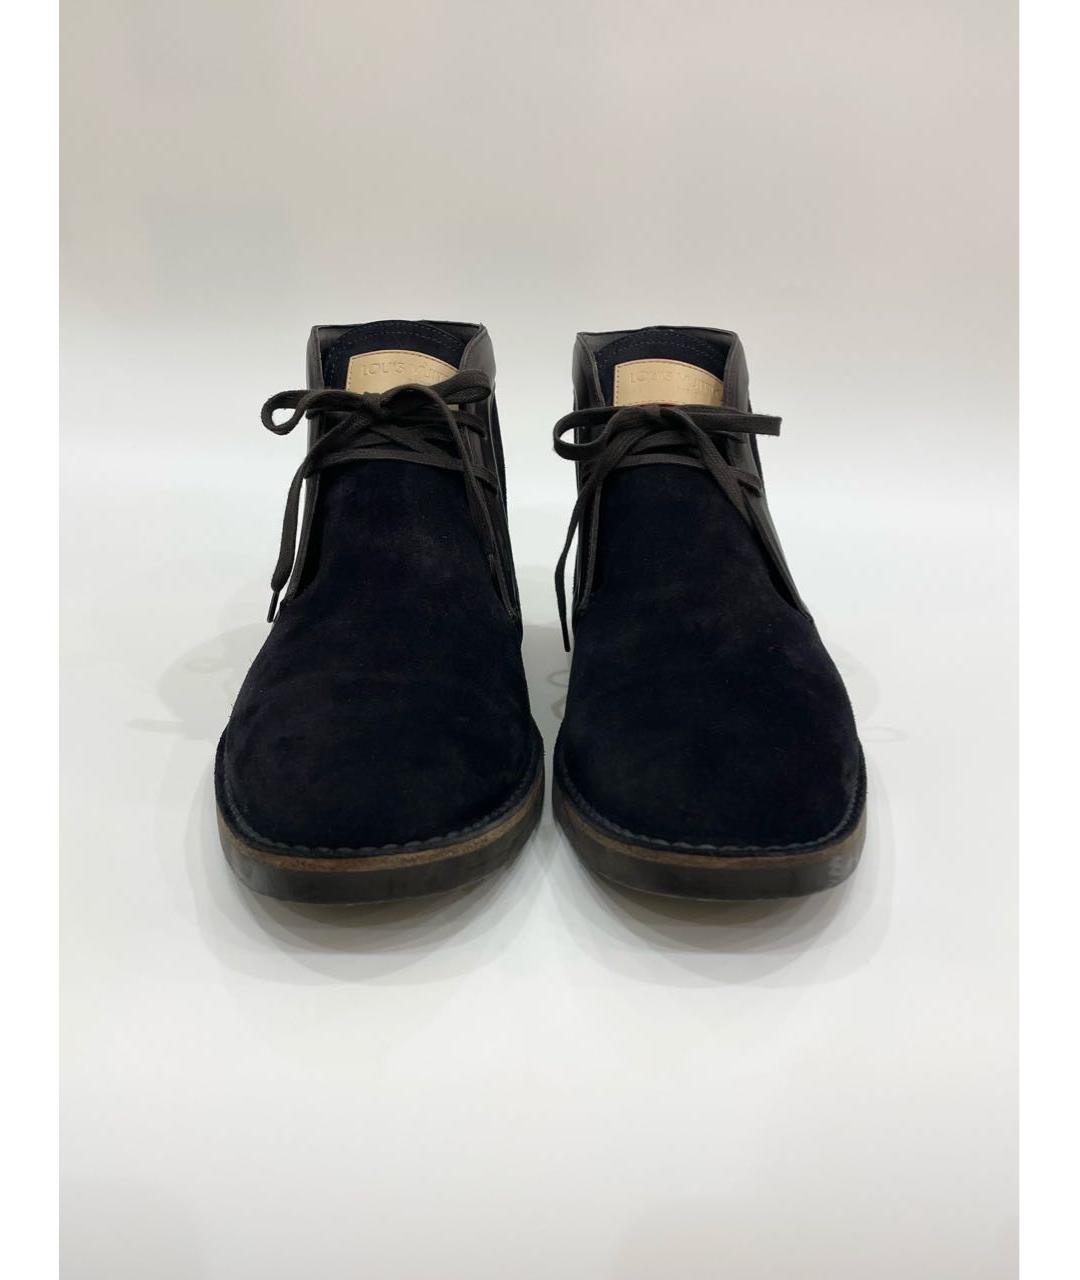 LOUIS VUITTON PRE-OWNED Темно-синие замшевые высокие ботинки, фото 2